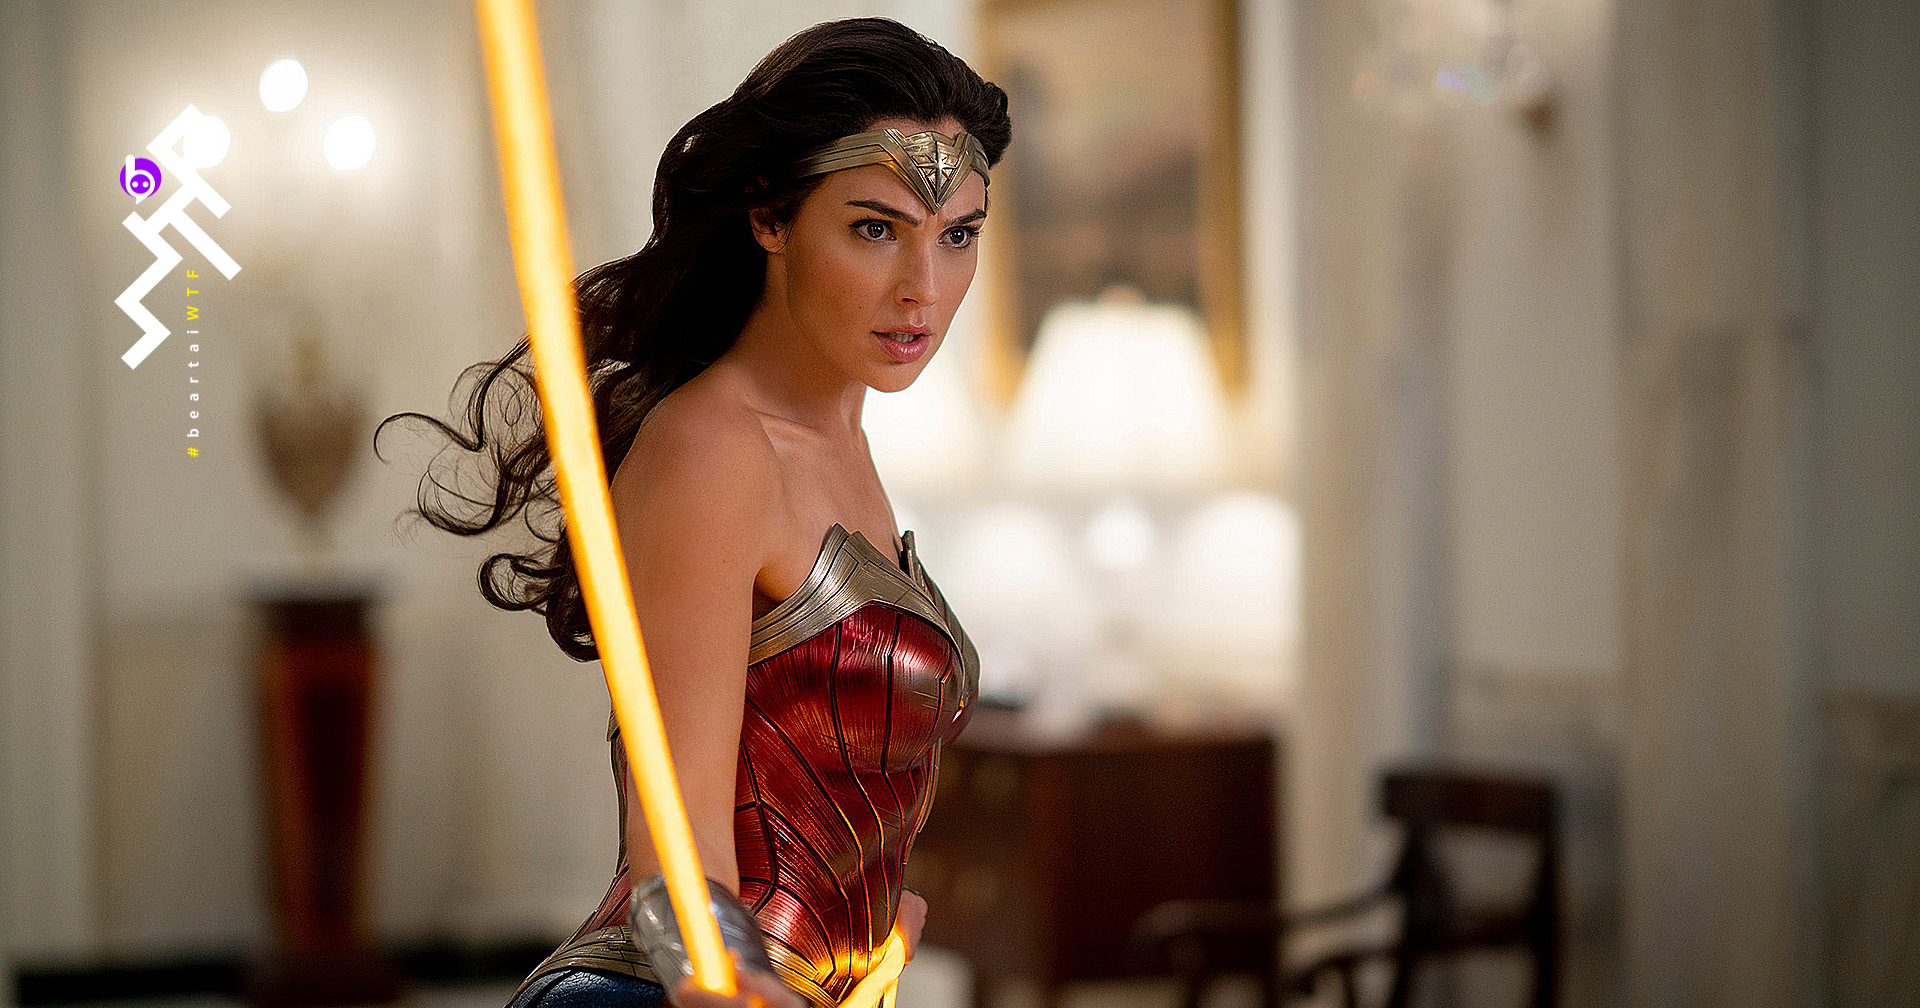 “กัล กาด็อต” เผย : เคยต้องรับการผ่าหลังและคอ ภายหลังจากถ่ายทำ Wonder Woman เสร็จ